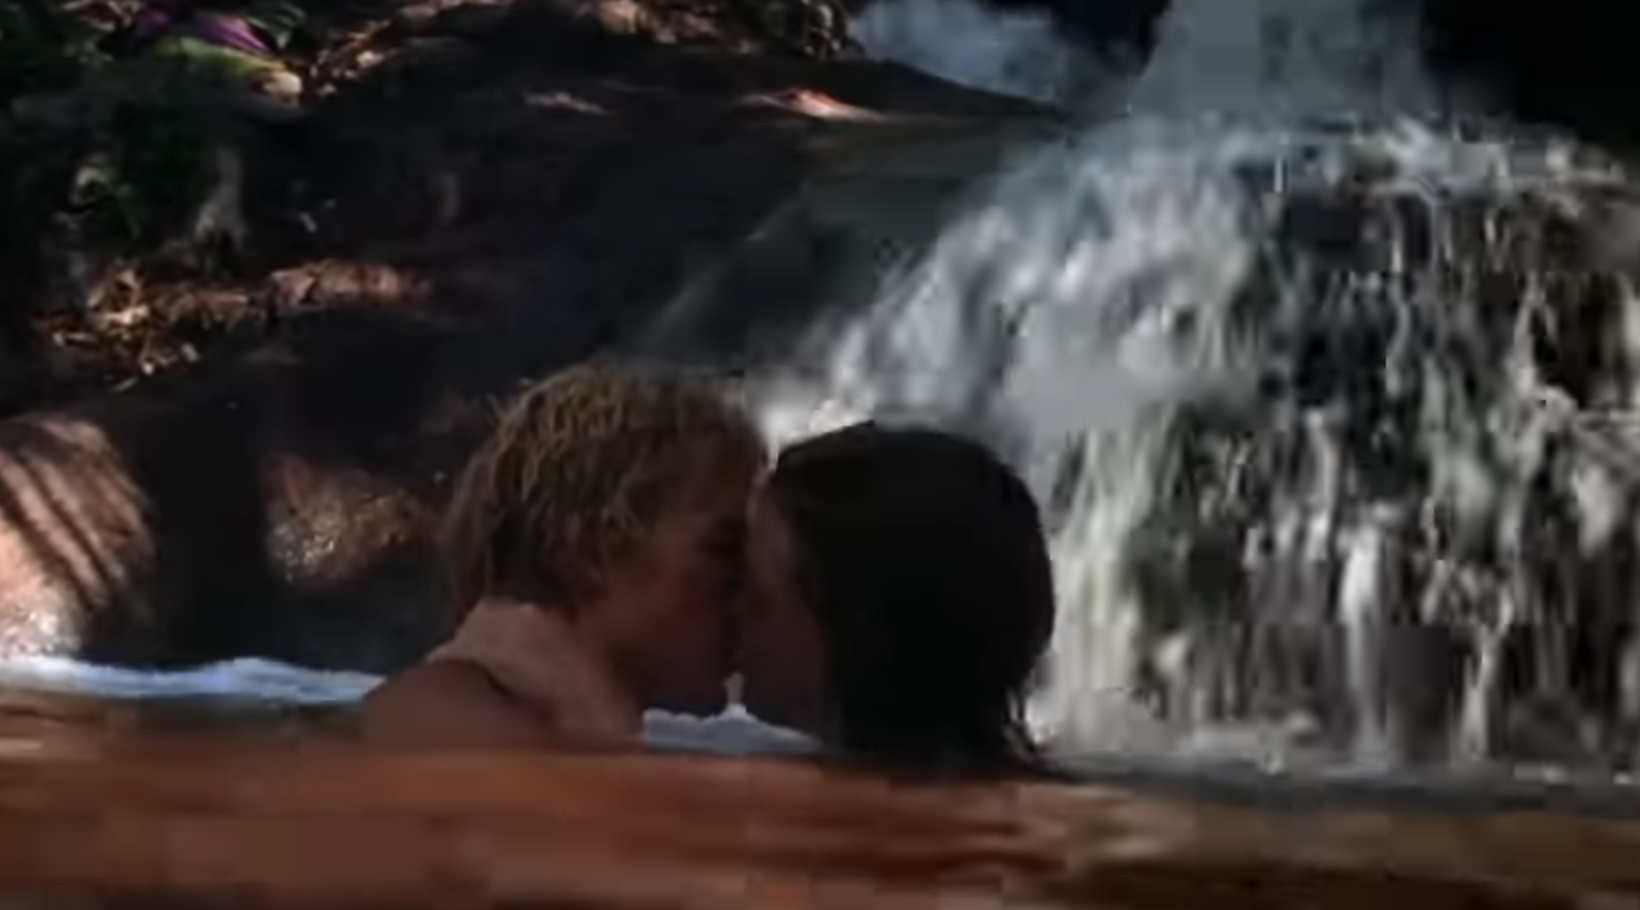 Richard and Emmeline kissing